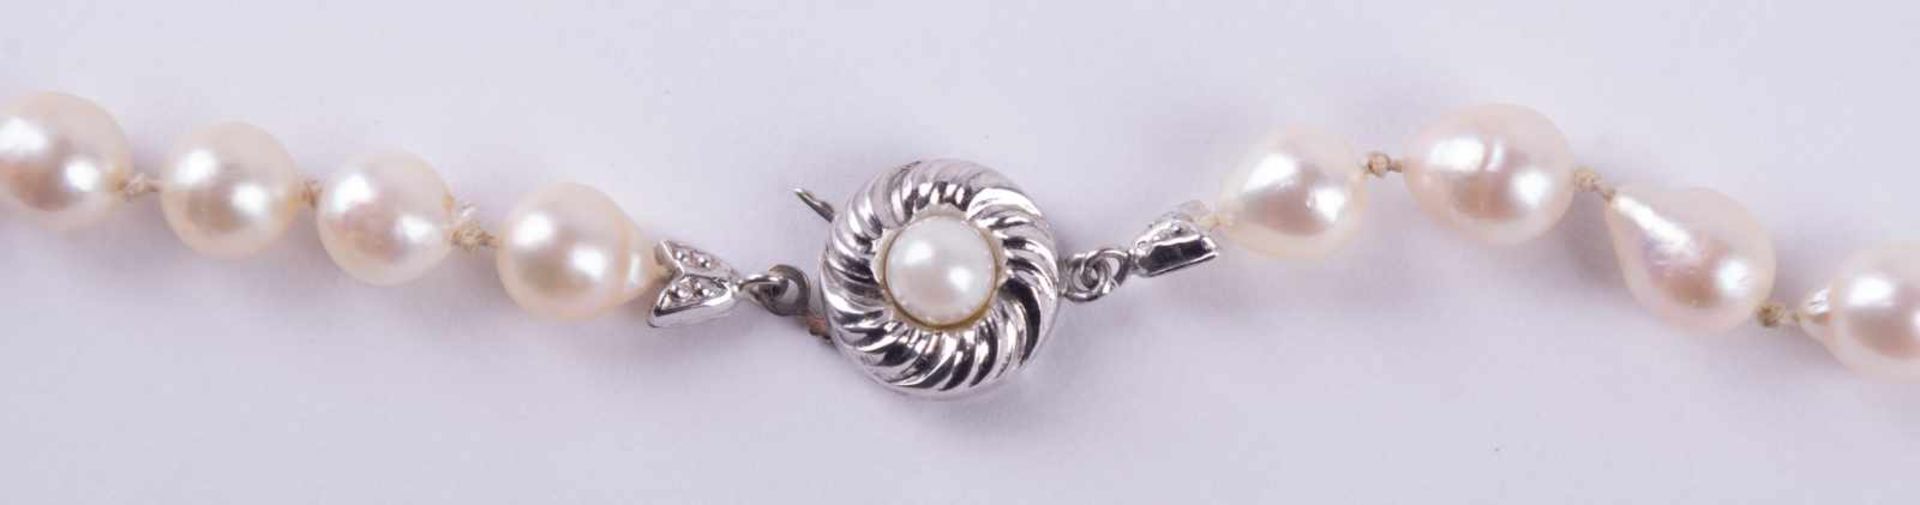 Perlenkette um 1930 Verschluss WG 333/000 mit Perle besetzt, L: 60 cm, Pearl necklace about 1930 - Bild 3 aus 4